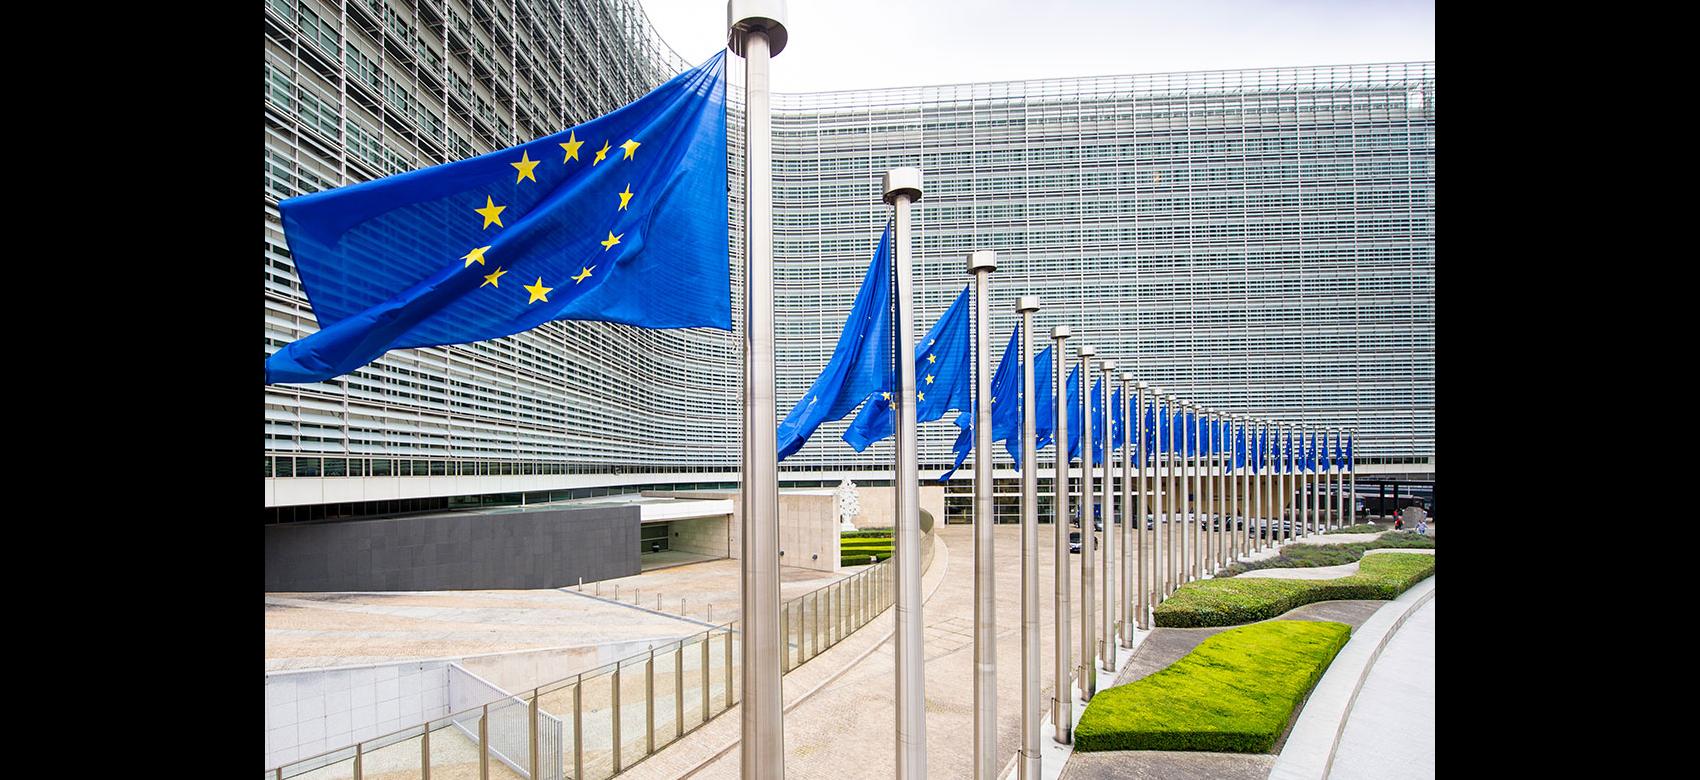 Banderas de la UE ondeando delante del edificio Berlaymont